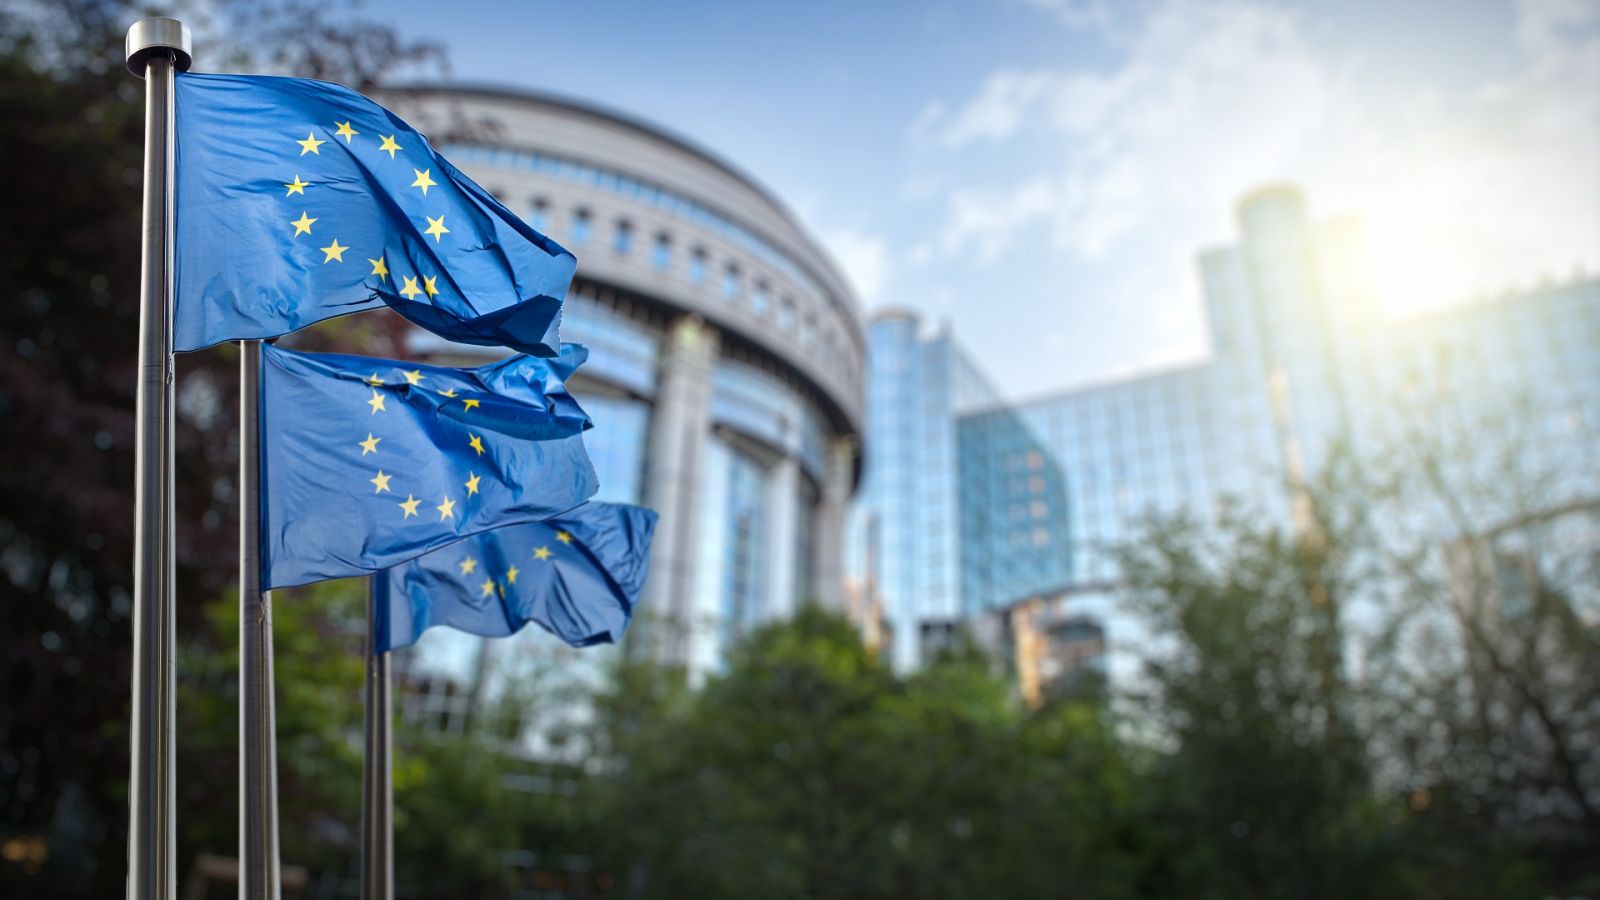 Banderas de la Unión Europea en el exterior del Parlamento Europeo